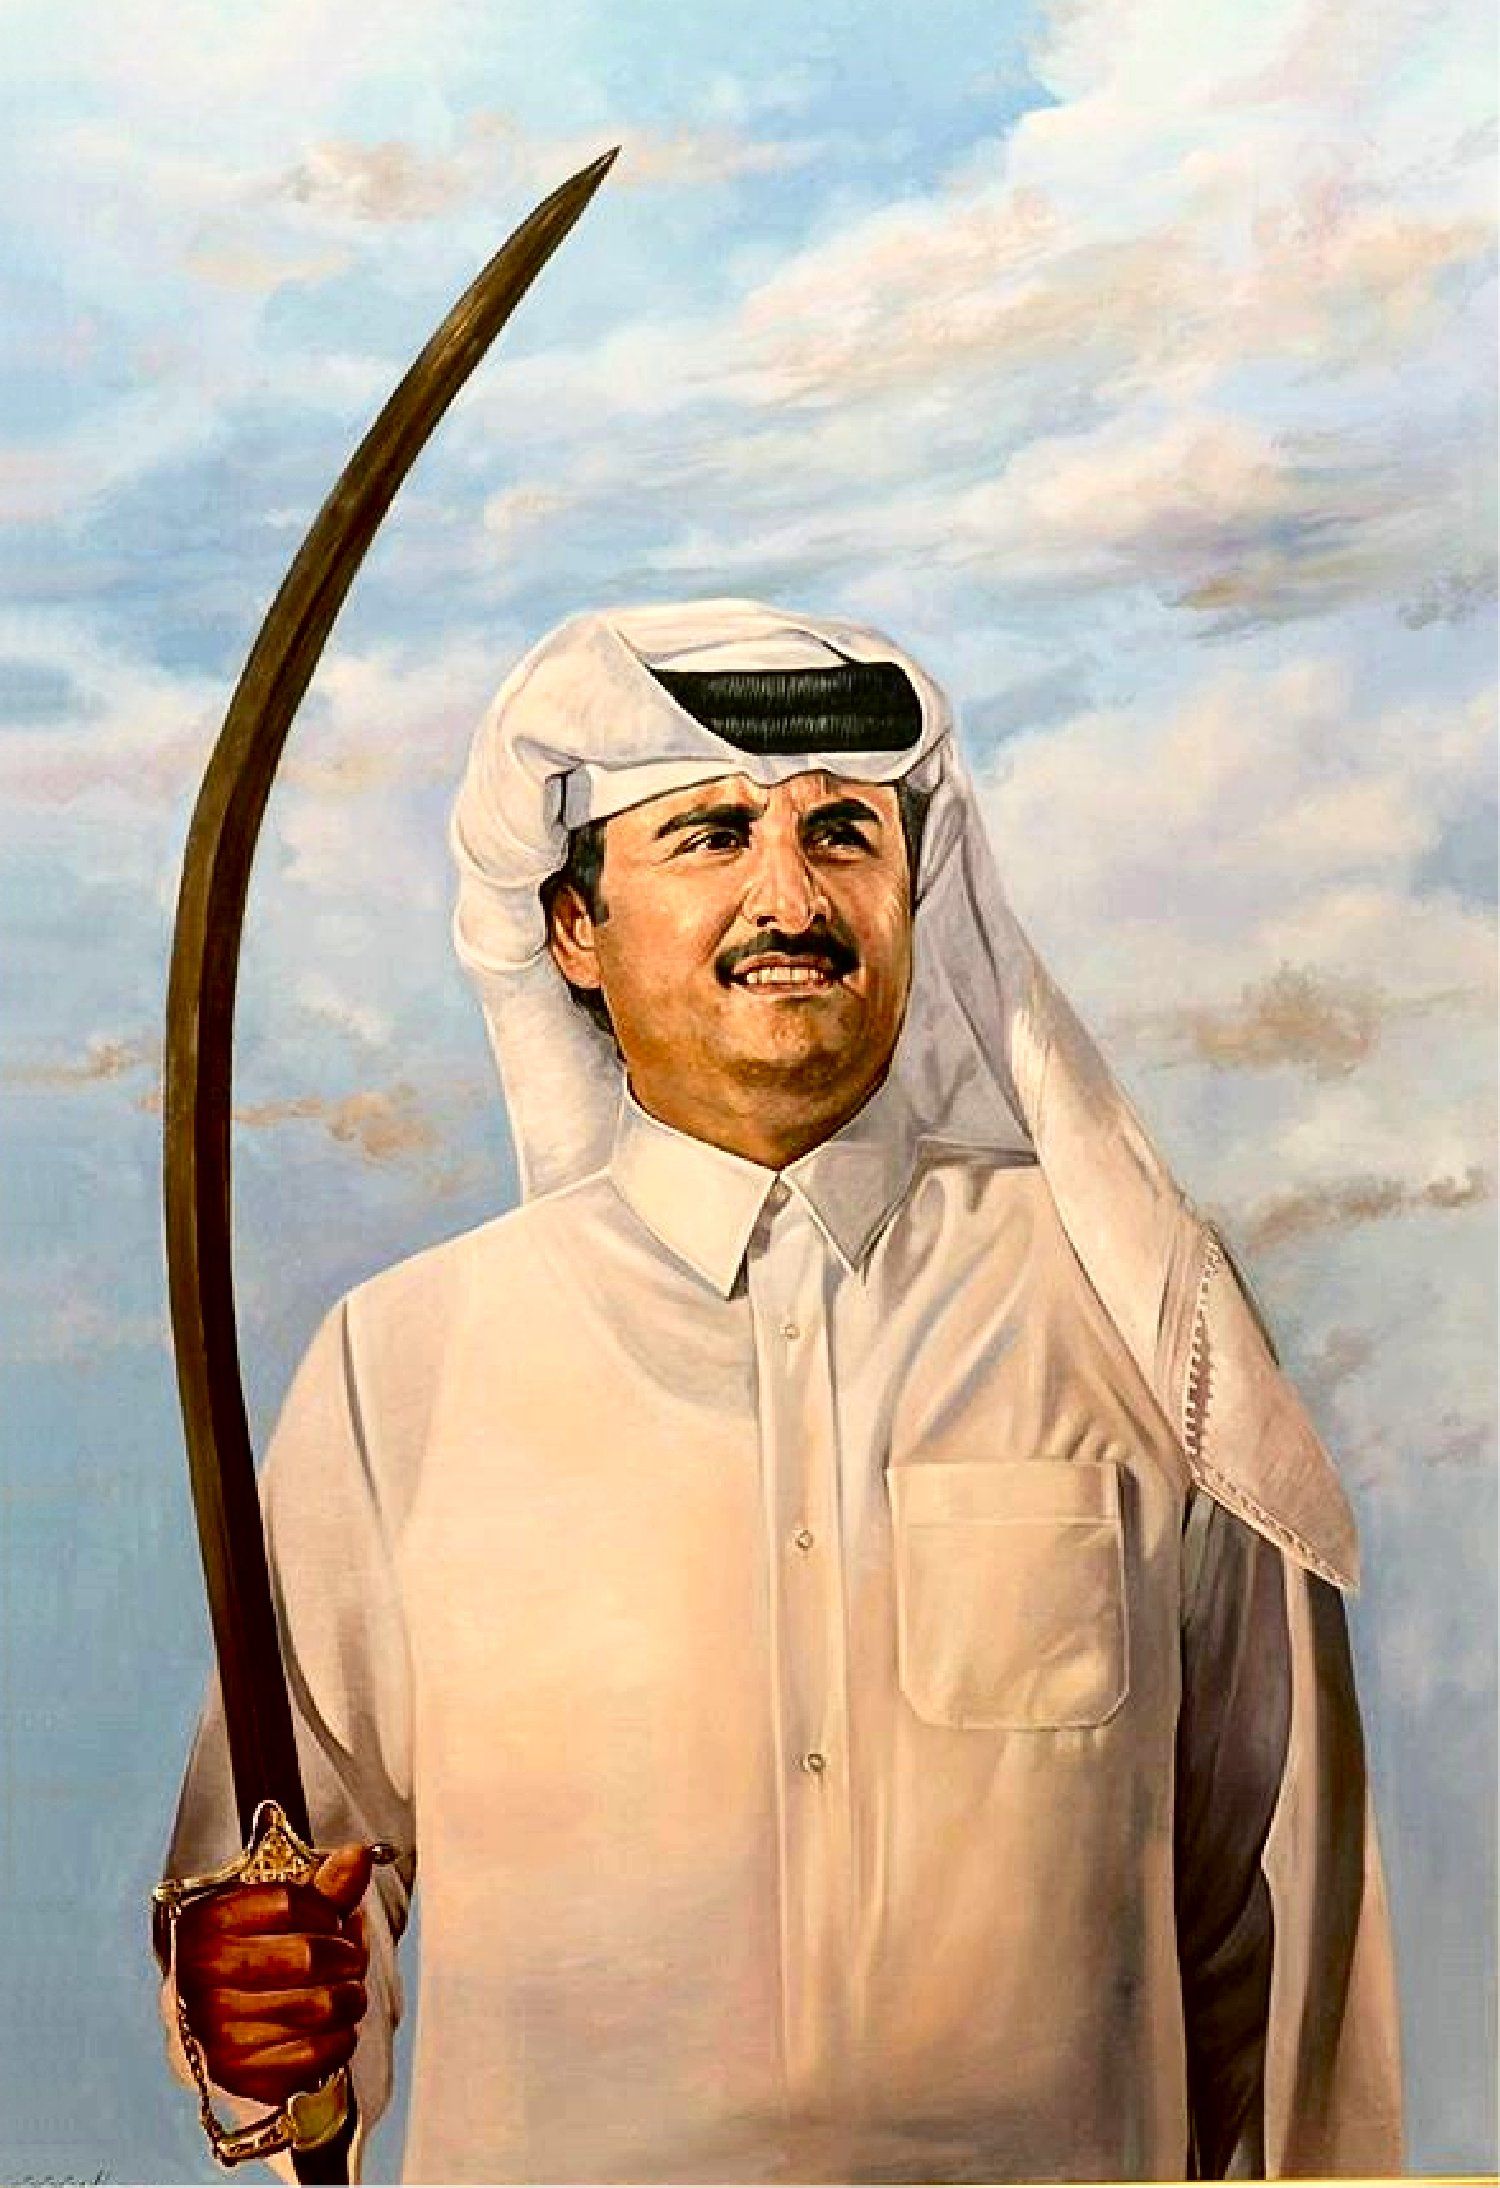 خلفيات 4k صور للكمبيوتر والجوال Wallpapers - خلفيات الامير الشيخ تميم بن حمد للفخامة عنوان أجمل صور لقائد دولة قطر